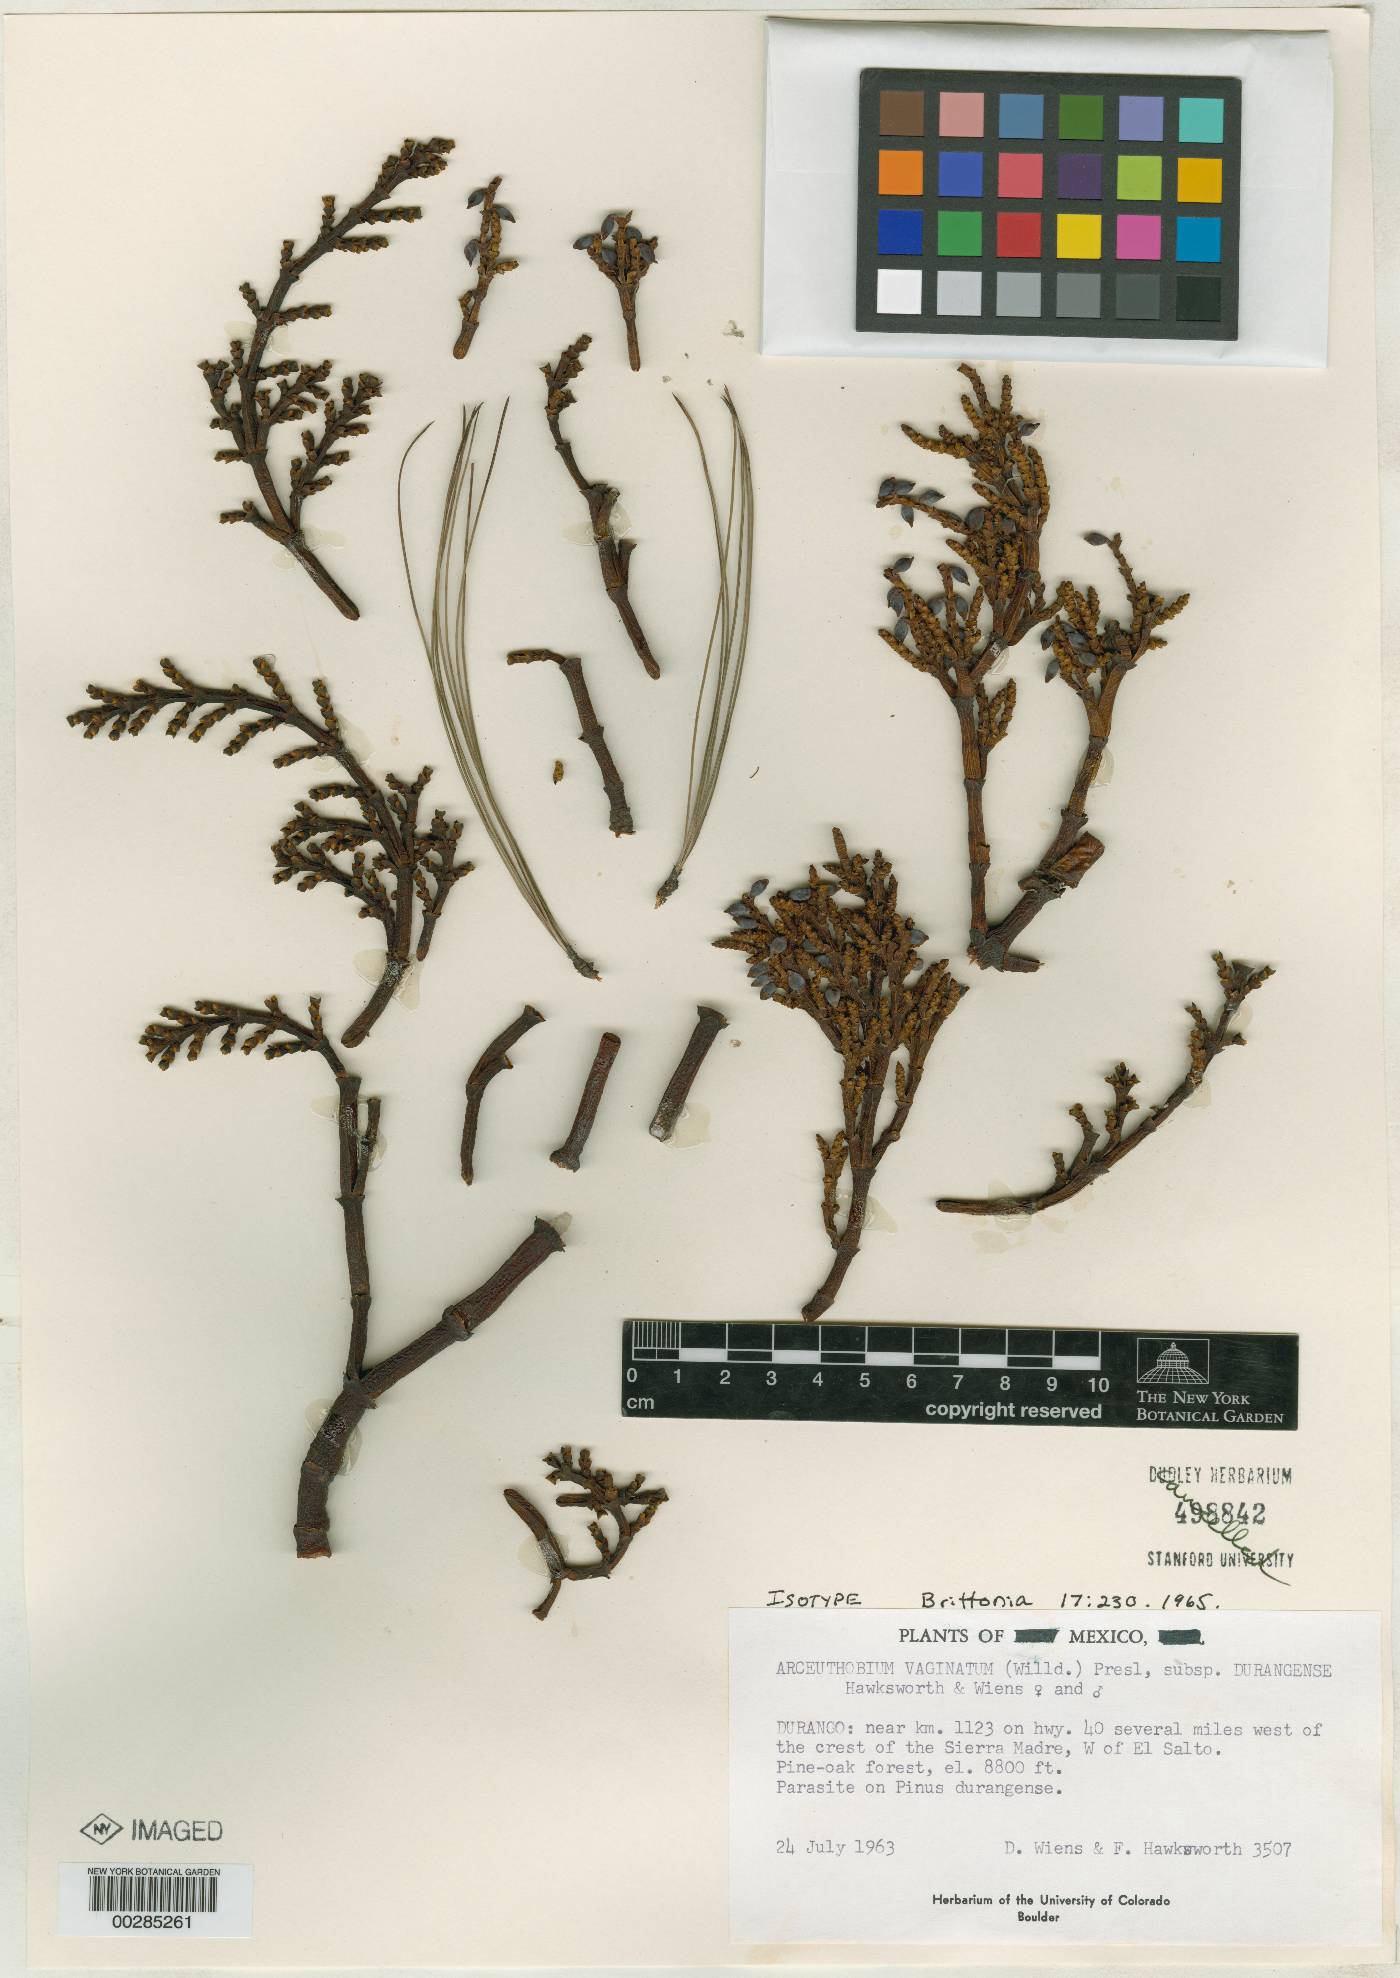 Arceuthobium vaginatum subsp. durangense image